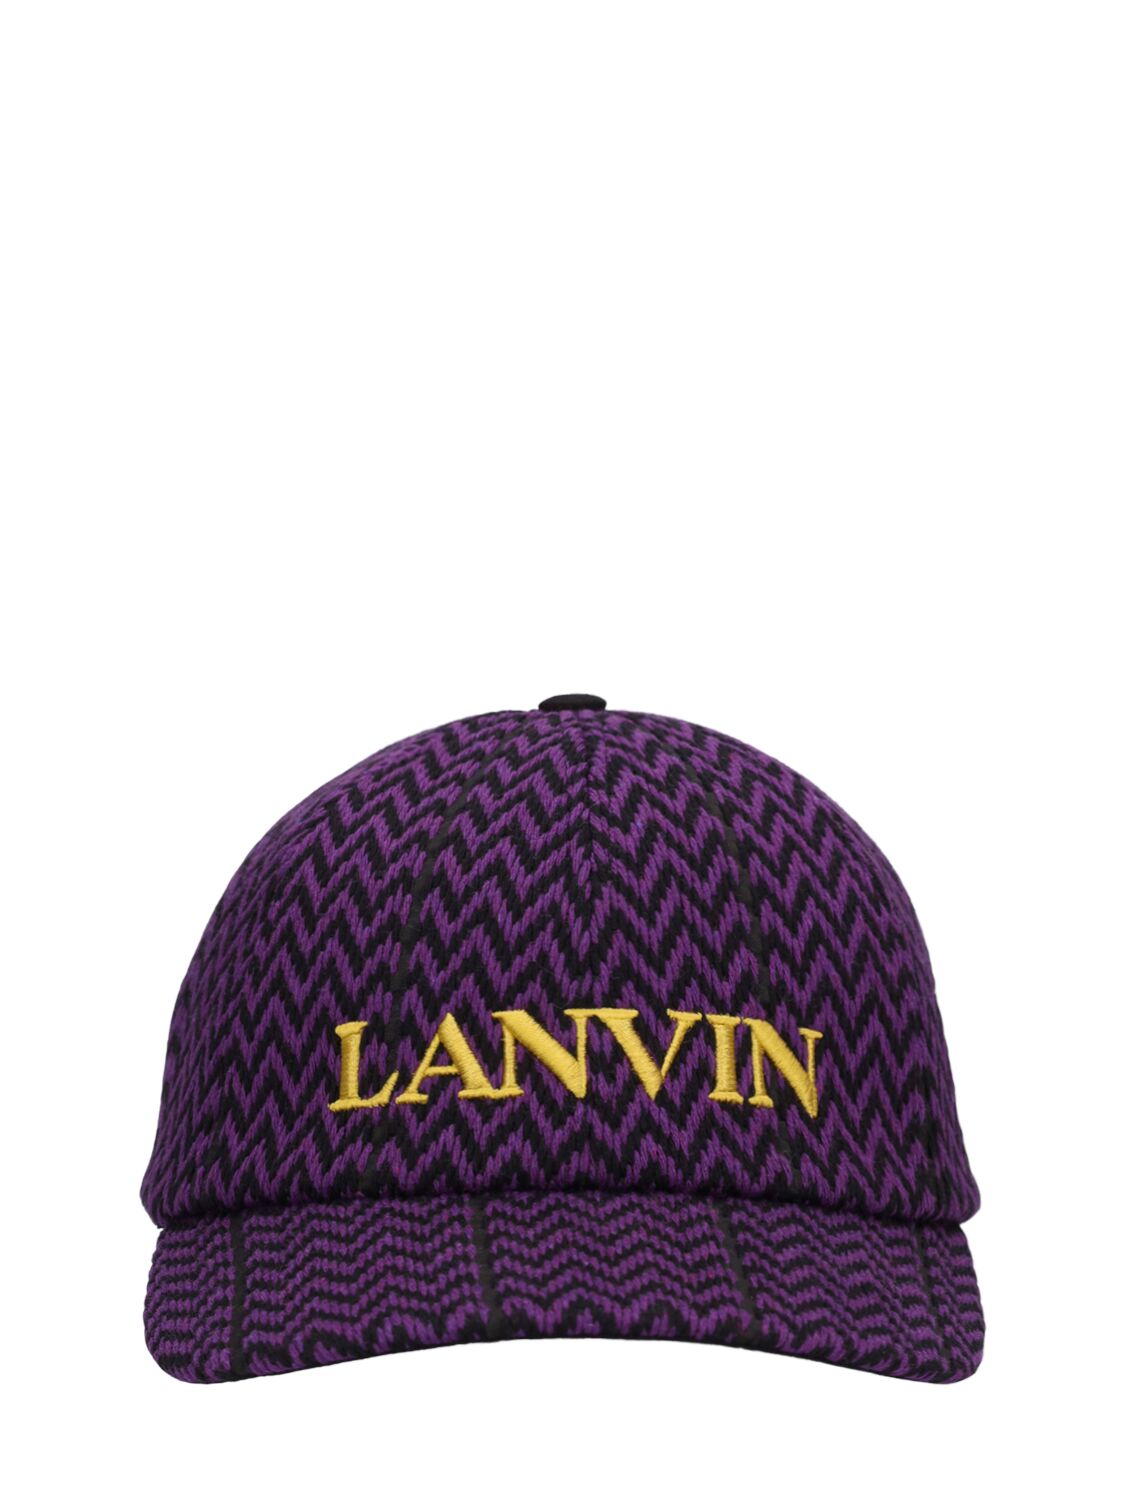 Lanvin Canvas Baseball Hat In Purple